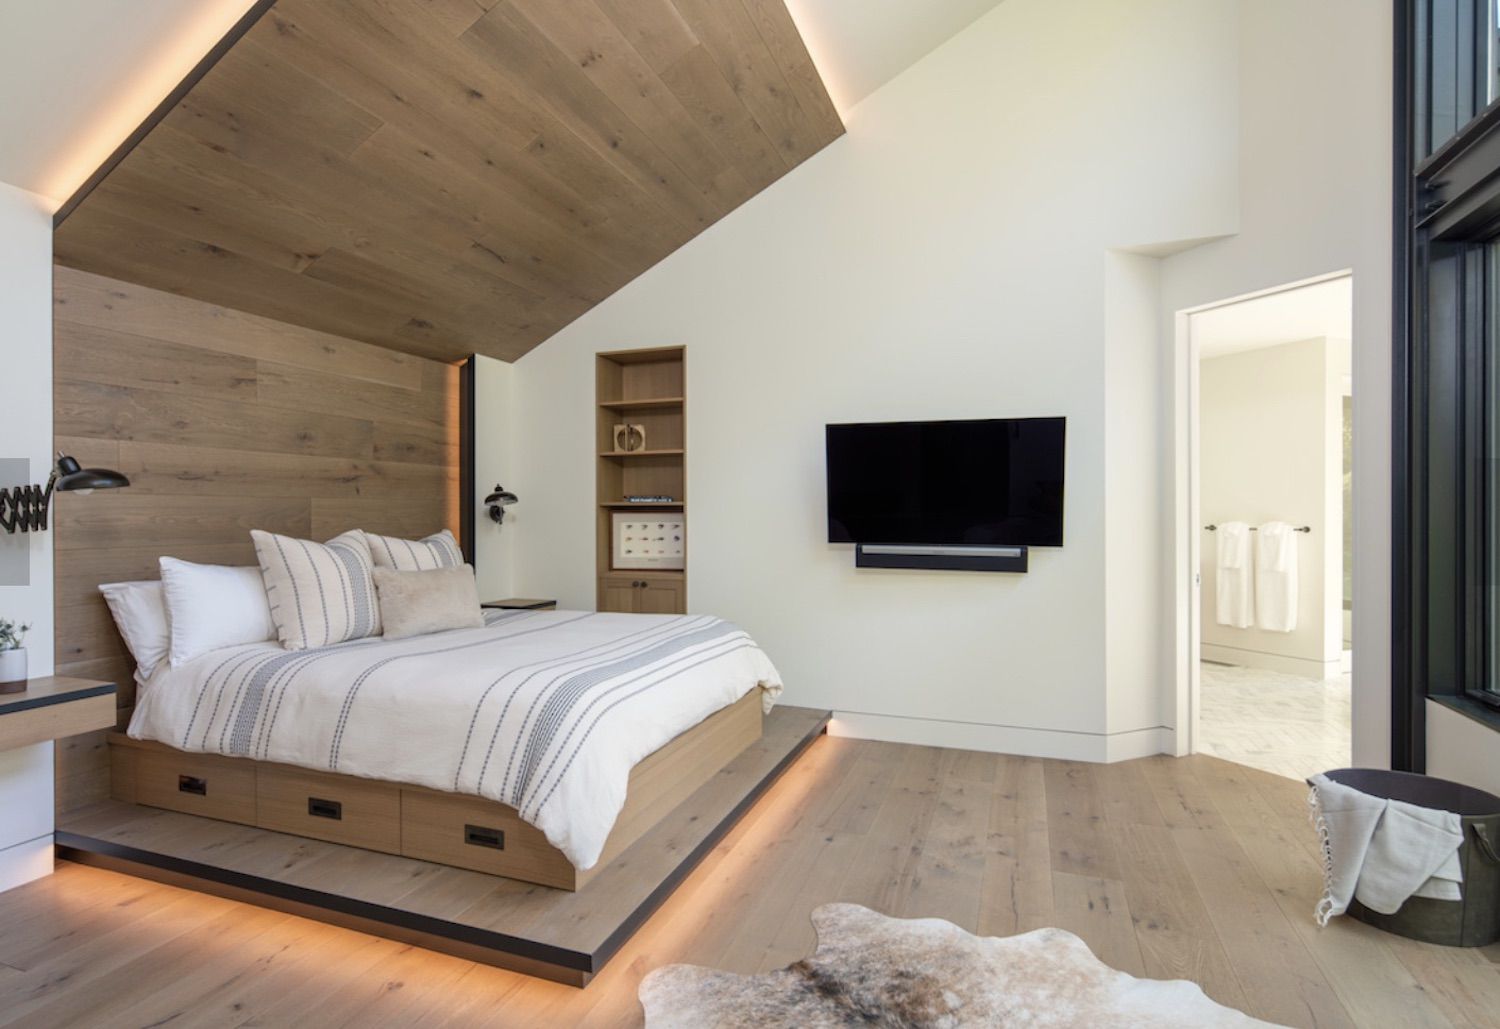 Modernes Schlafzimmer mit heller Akzentwand und Bettgestell aus Holz, Holzboden, offener Grundriss